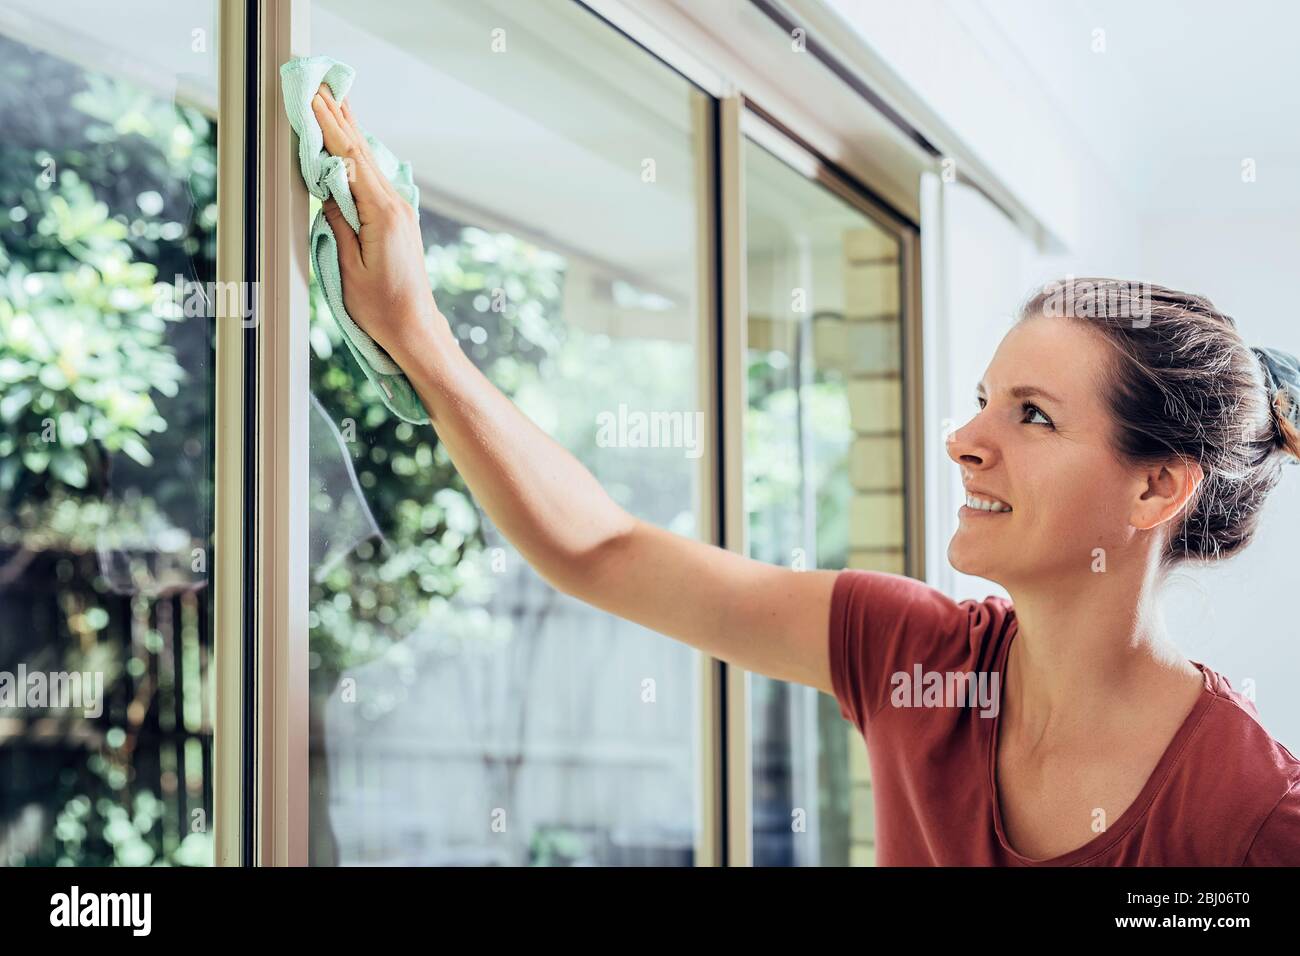 Junge lächelnde Frau putzt Fenster in einem Haus, macht Hausarbeiten. Stockfoto